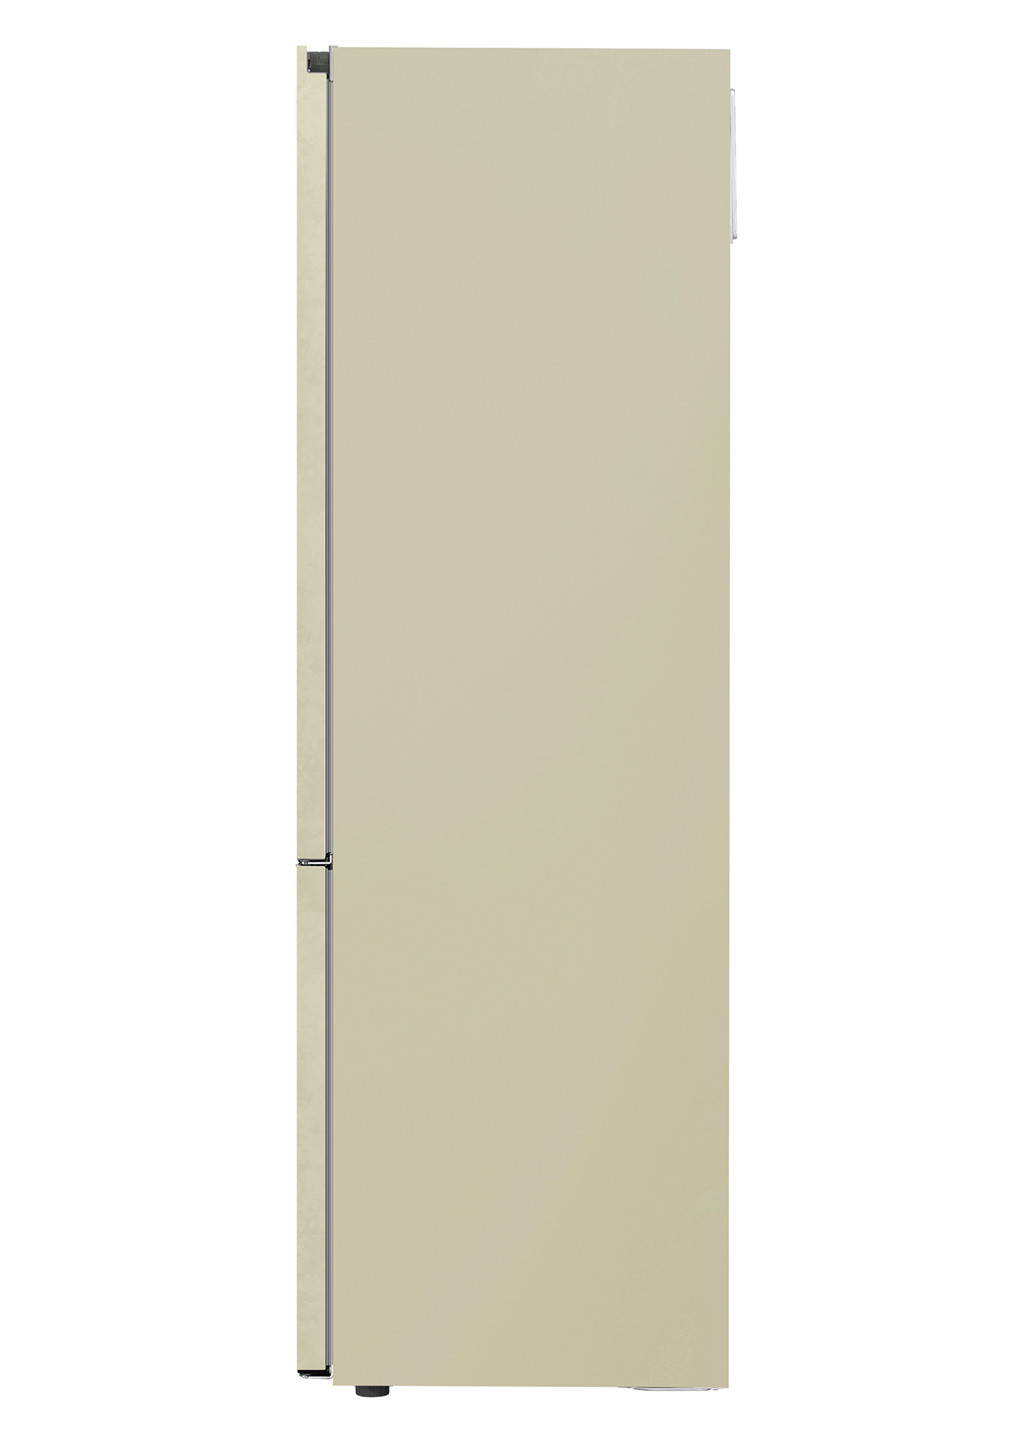 Холодильник комби LG GW-B509SEDZ